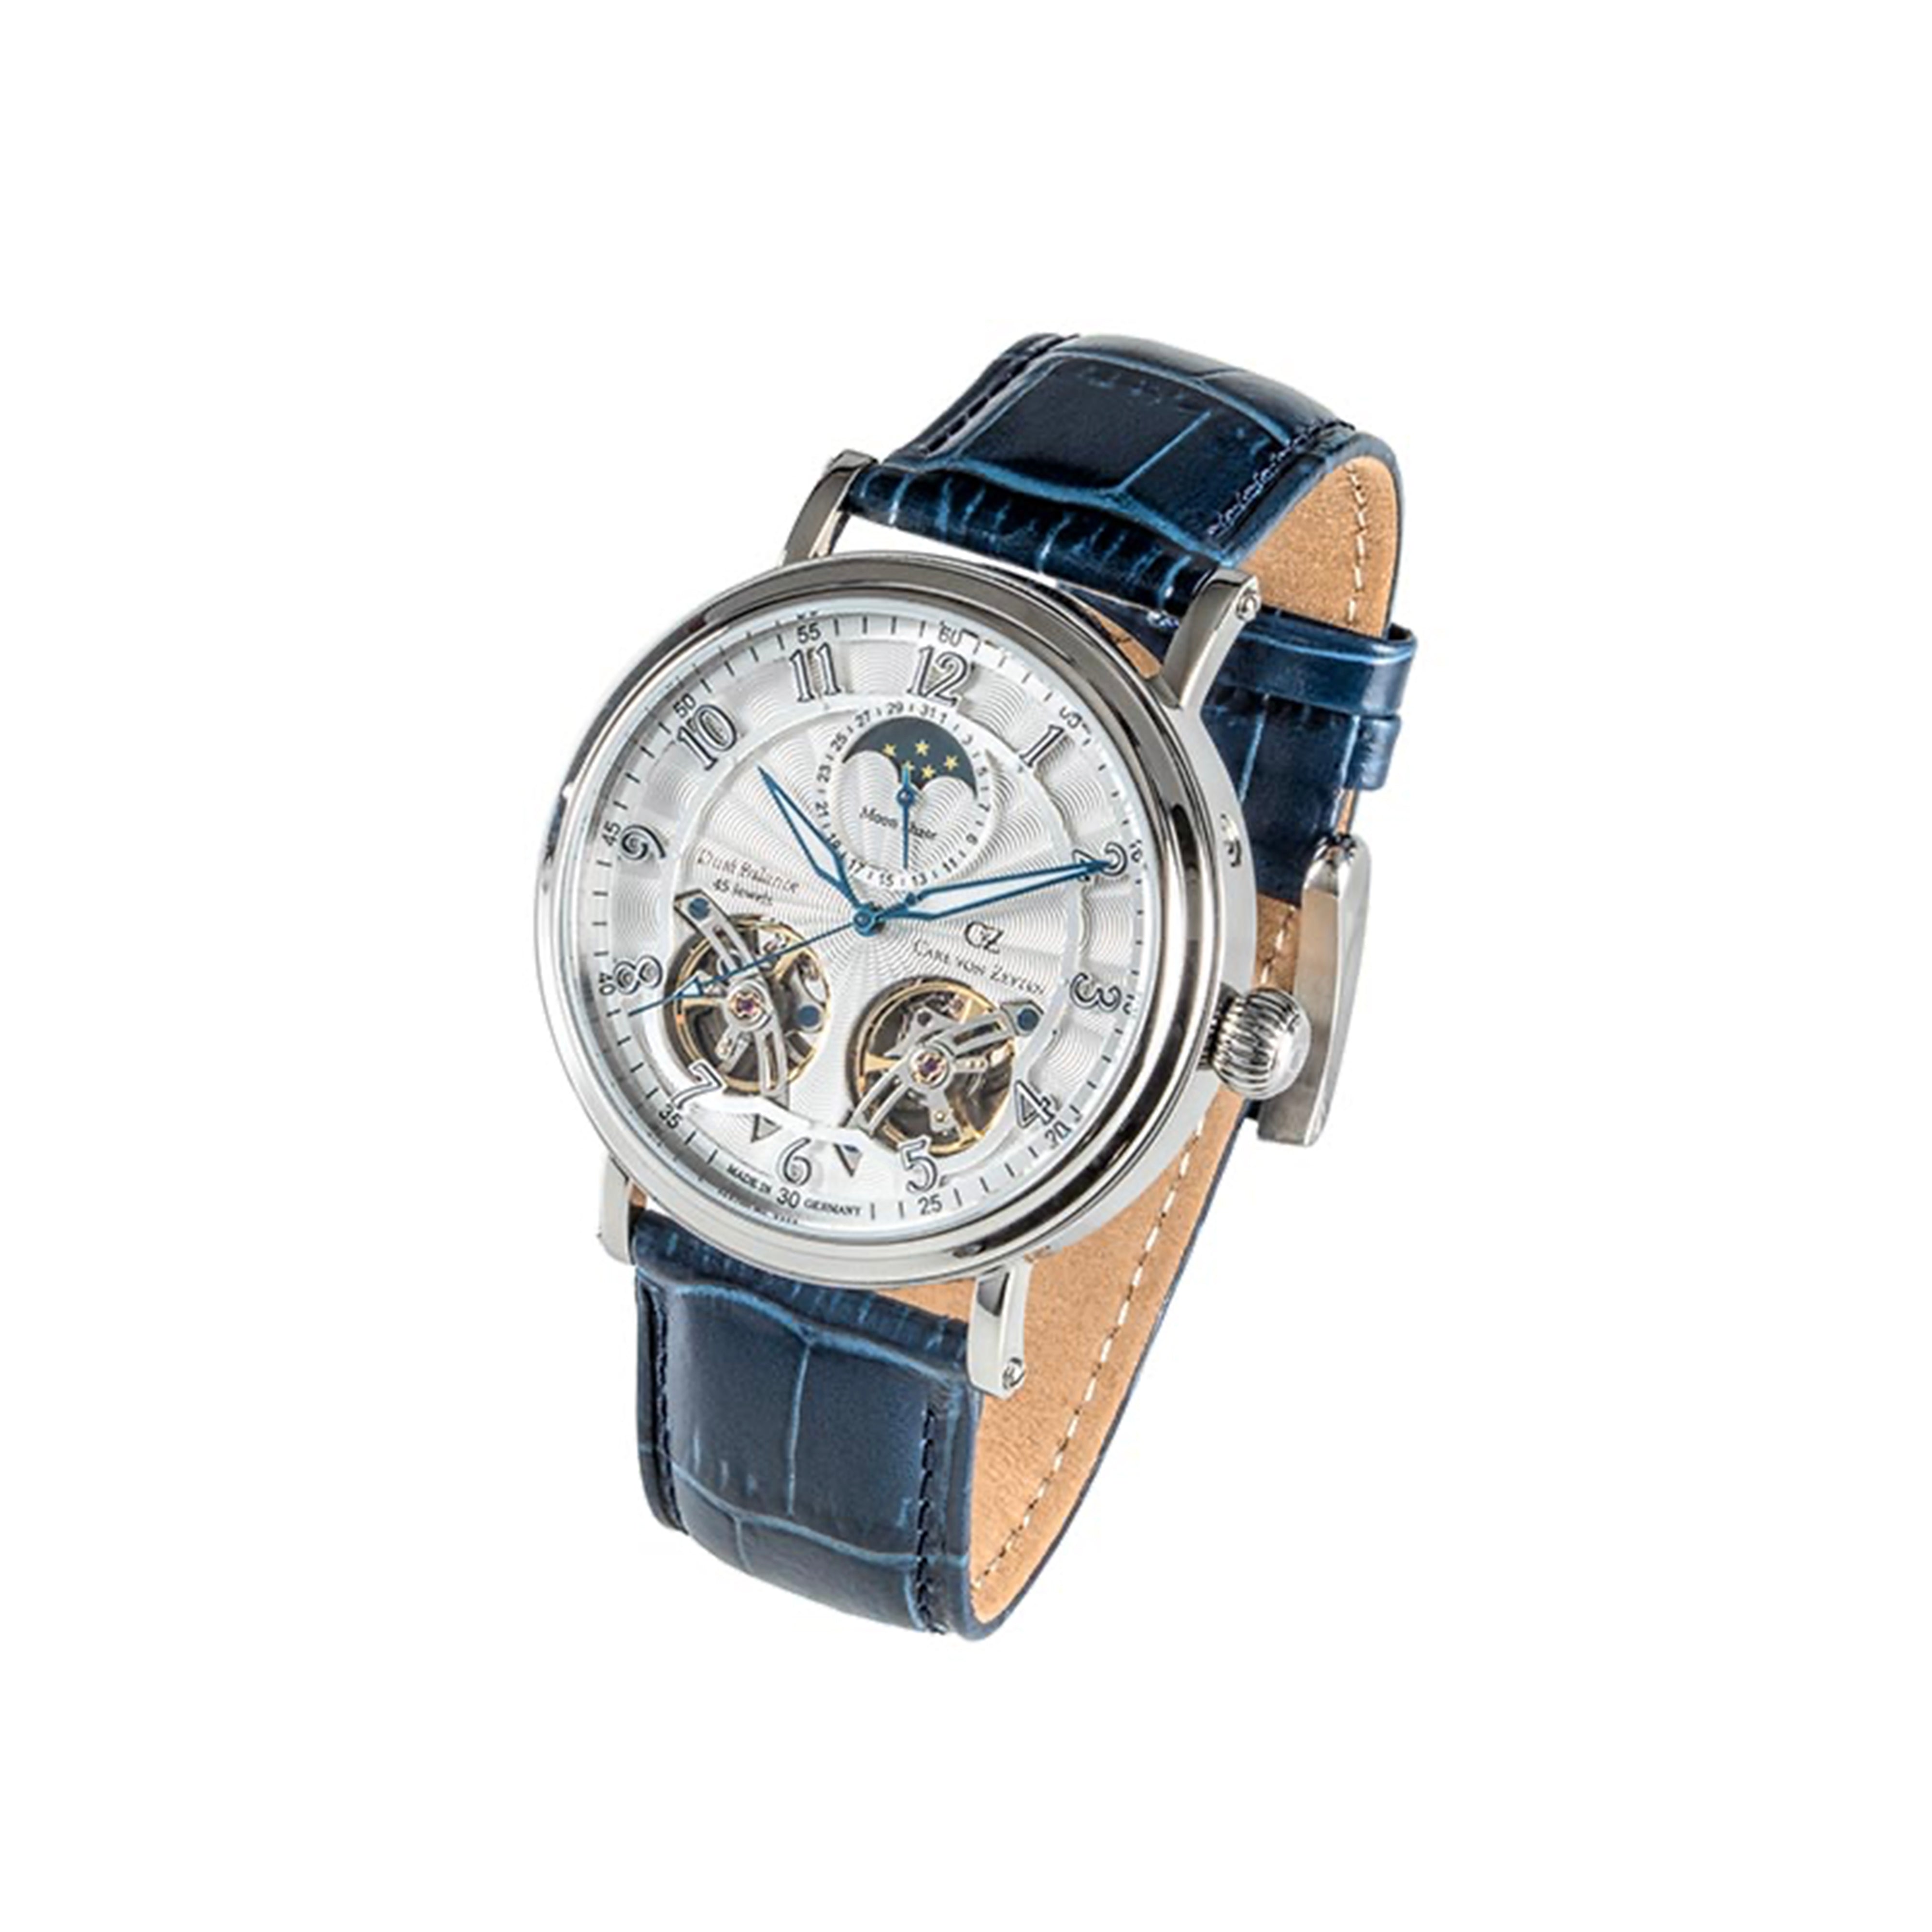 Carl von Zeyten Murg Automatic Watch